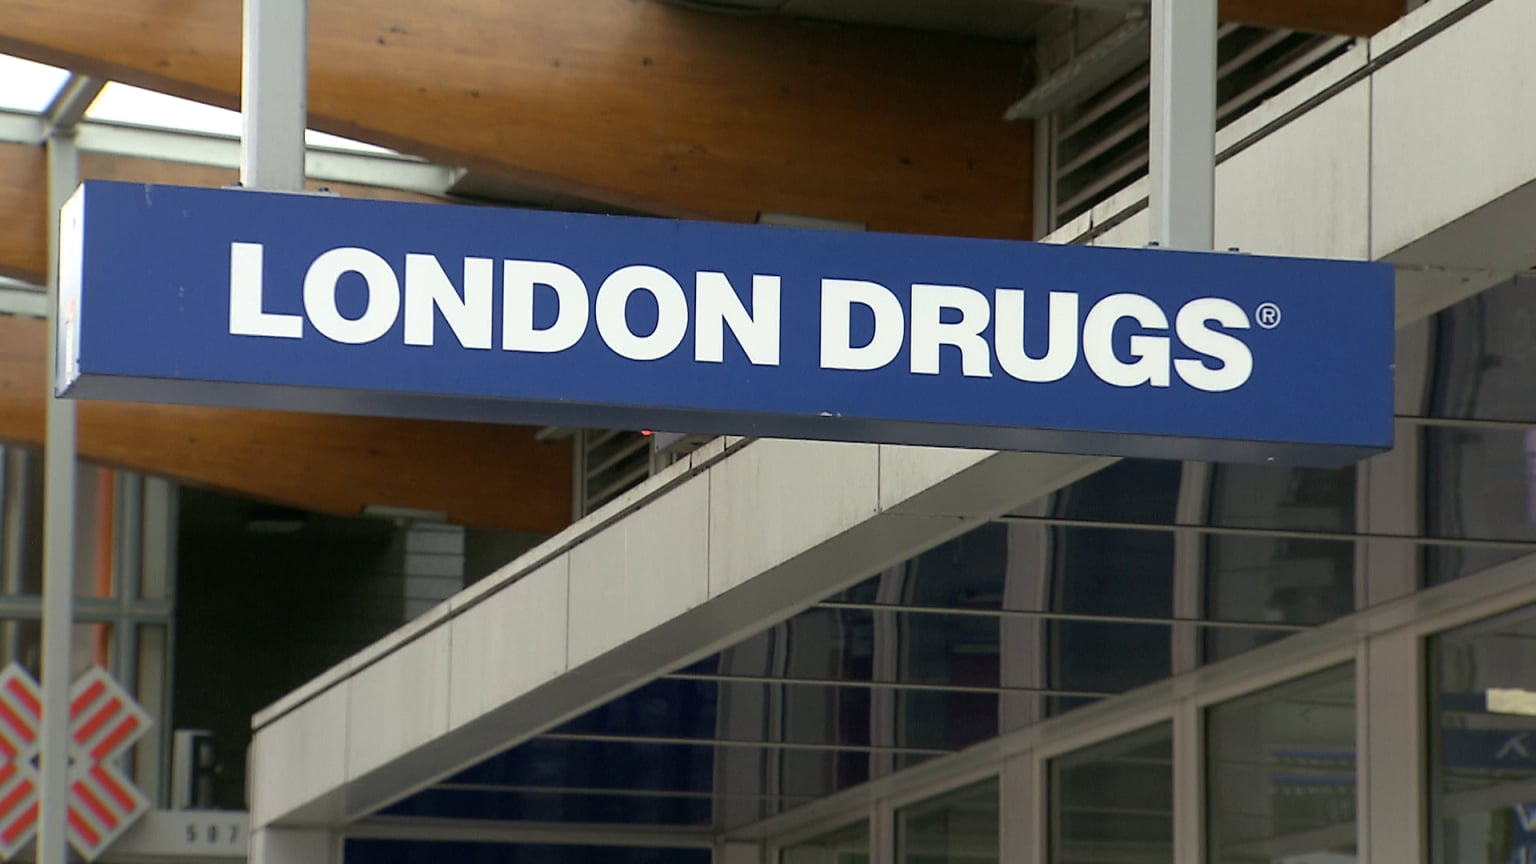 London Drug ransom demand taken offline